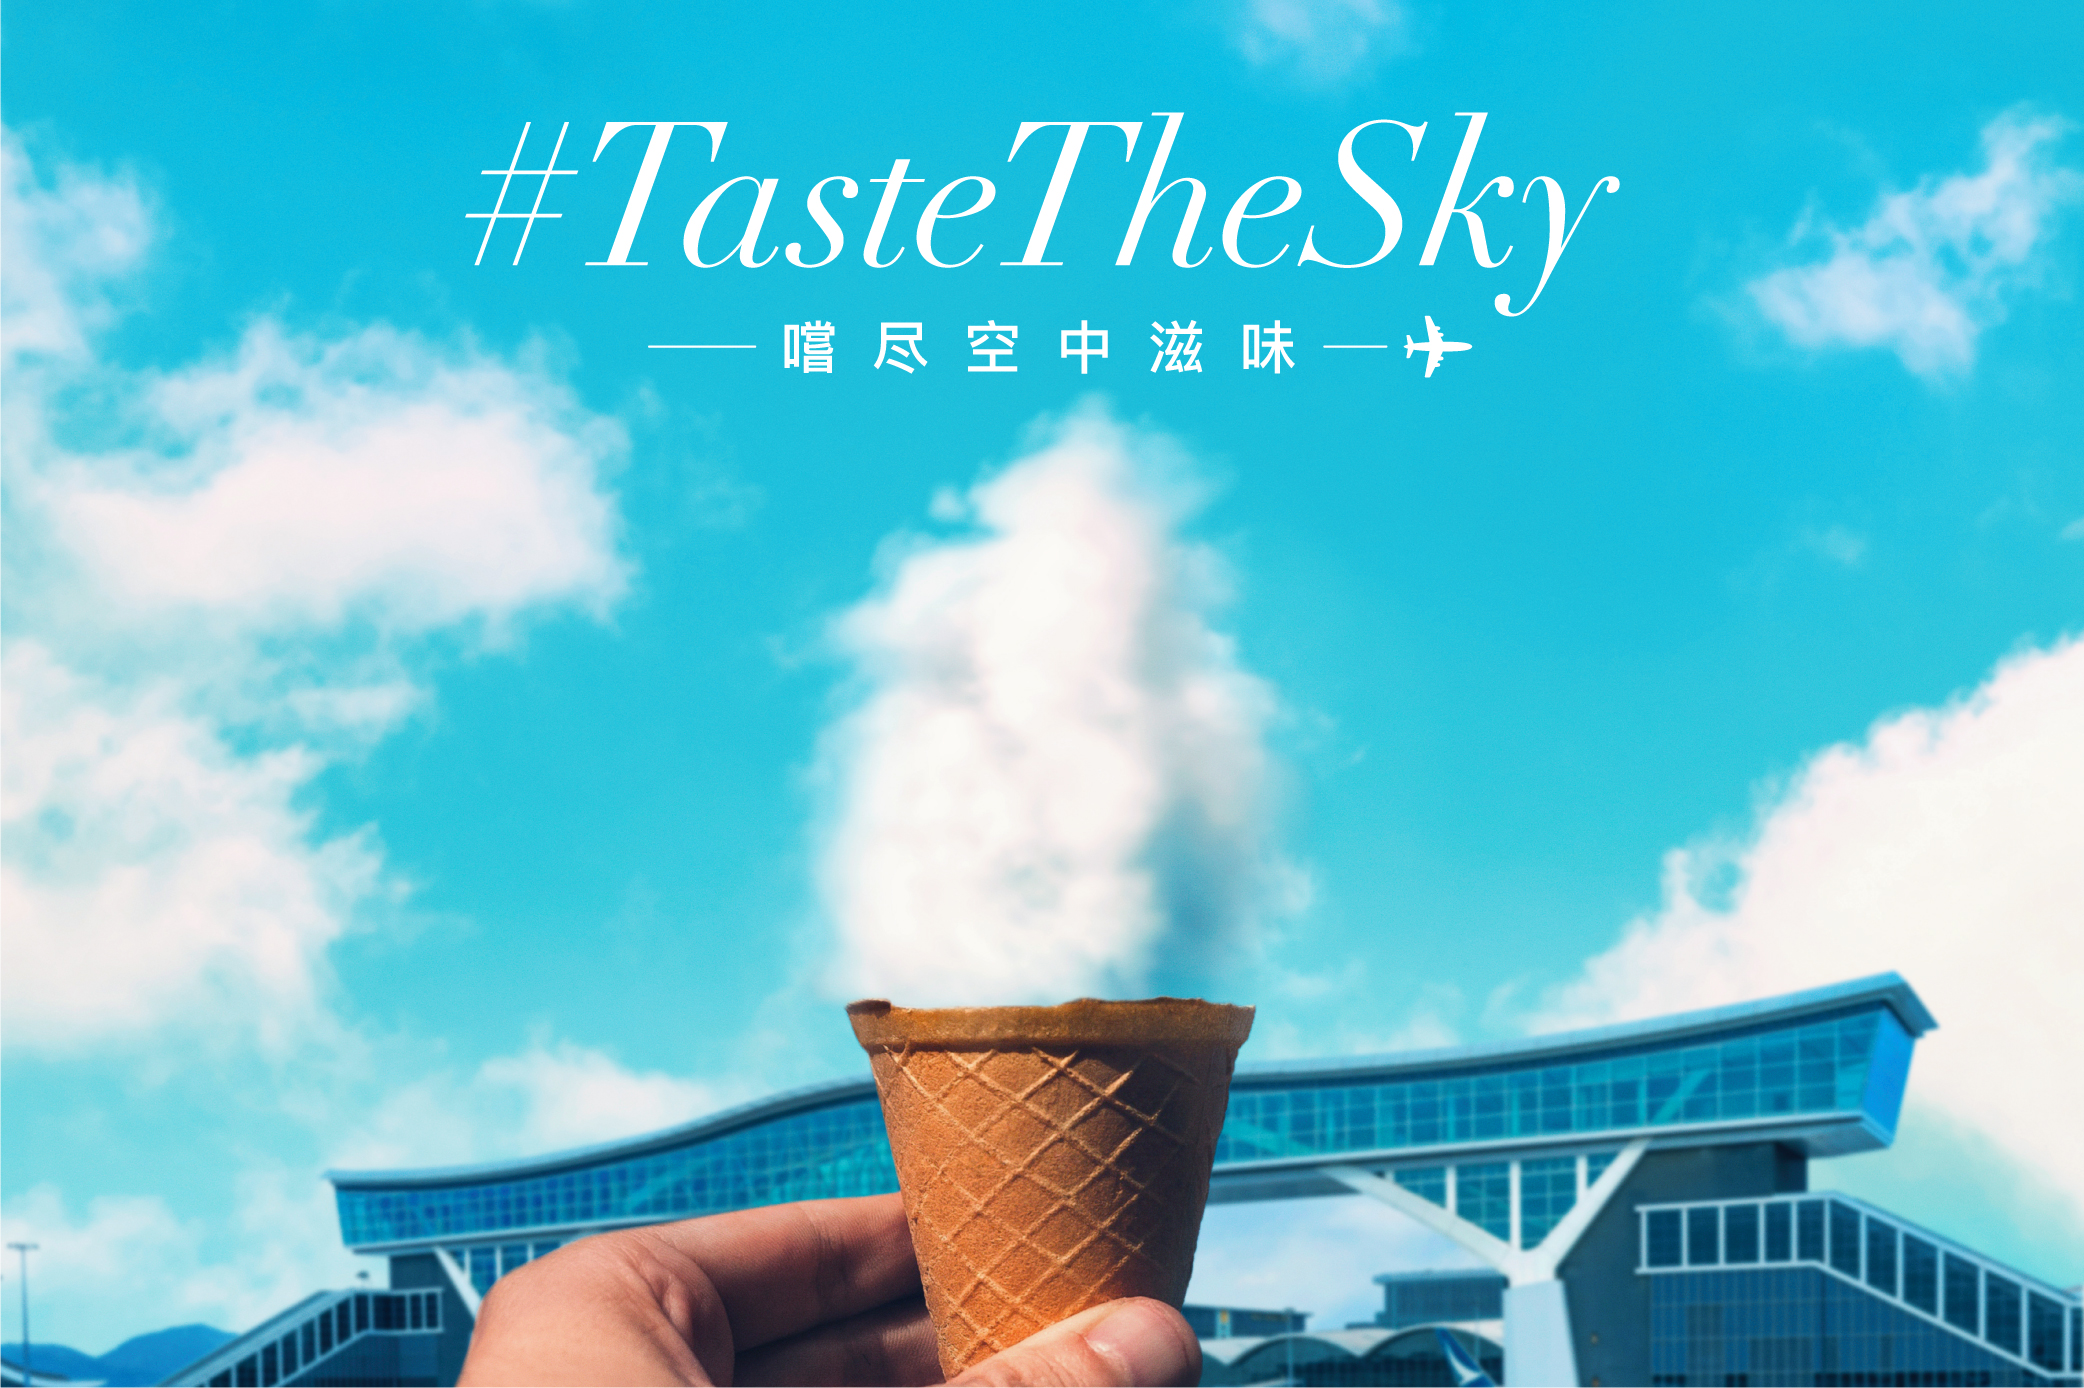 香港国际机场举办「#TasteTheSky #尝尽空中滋味挑战」